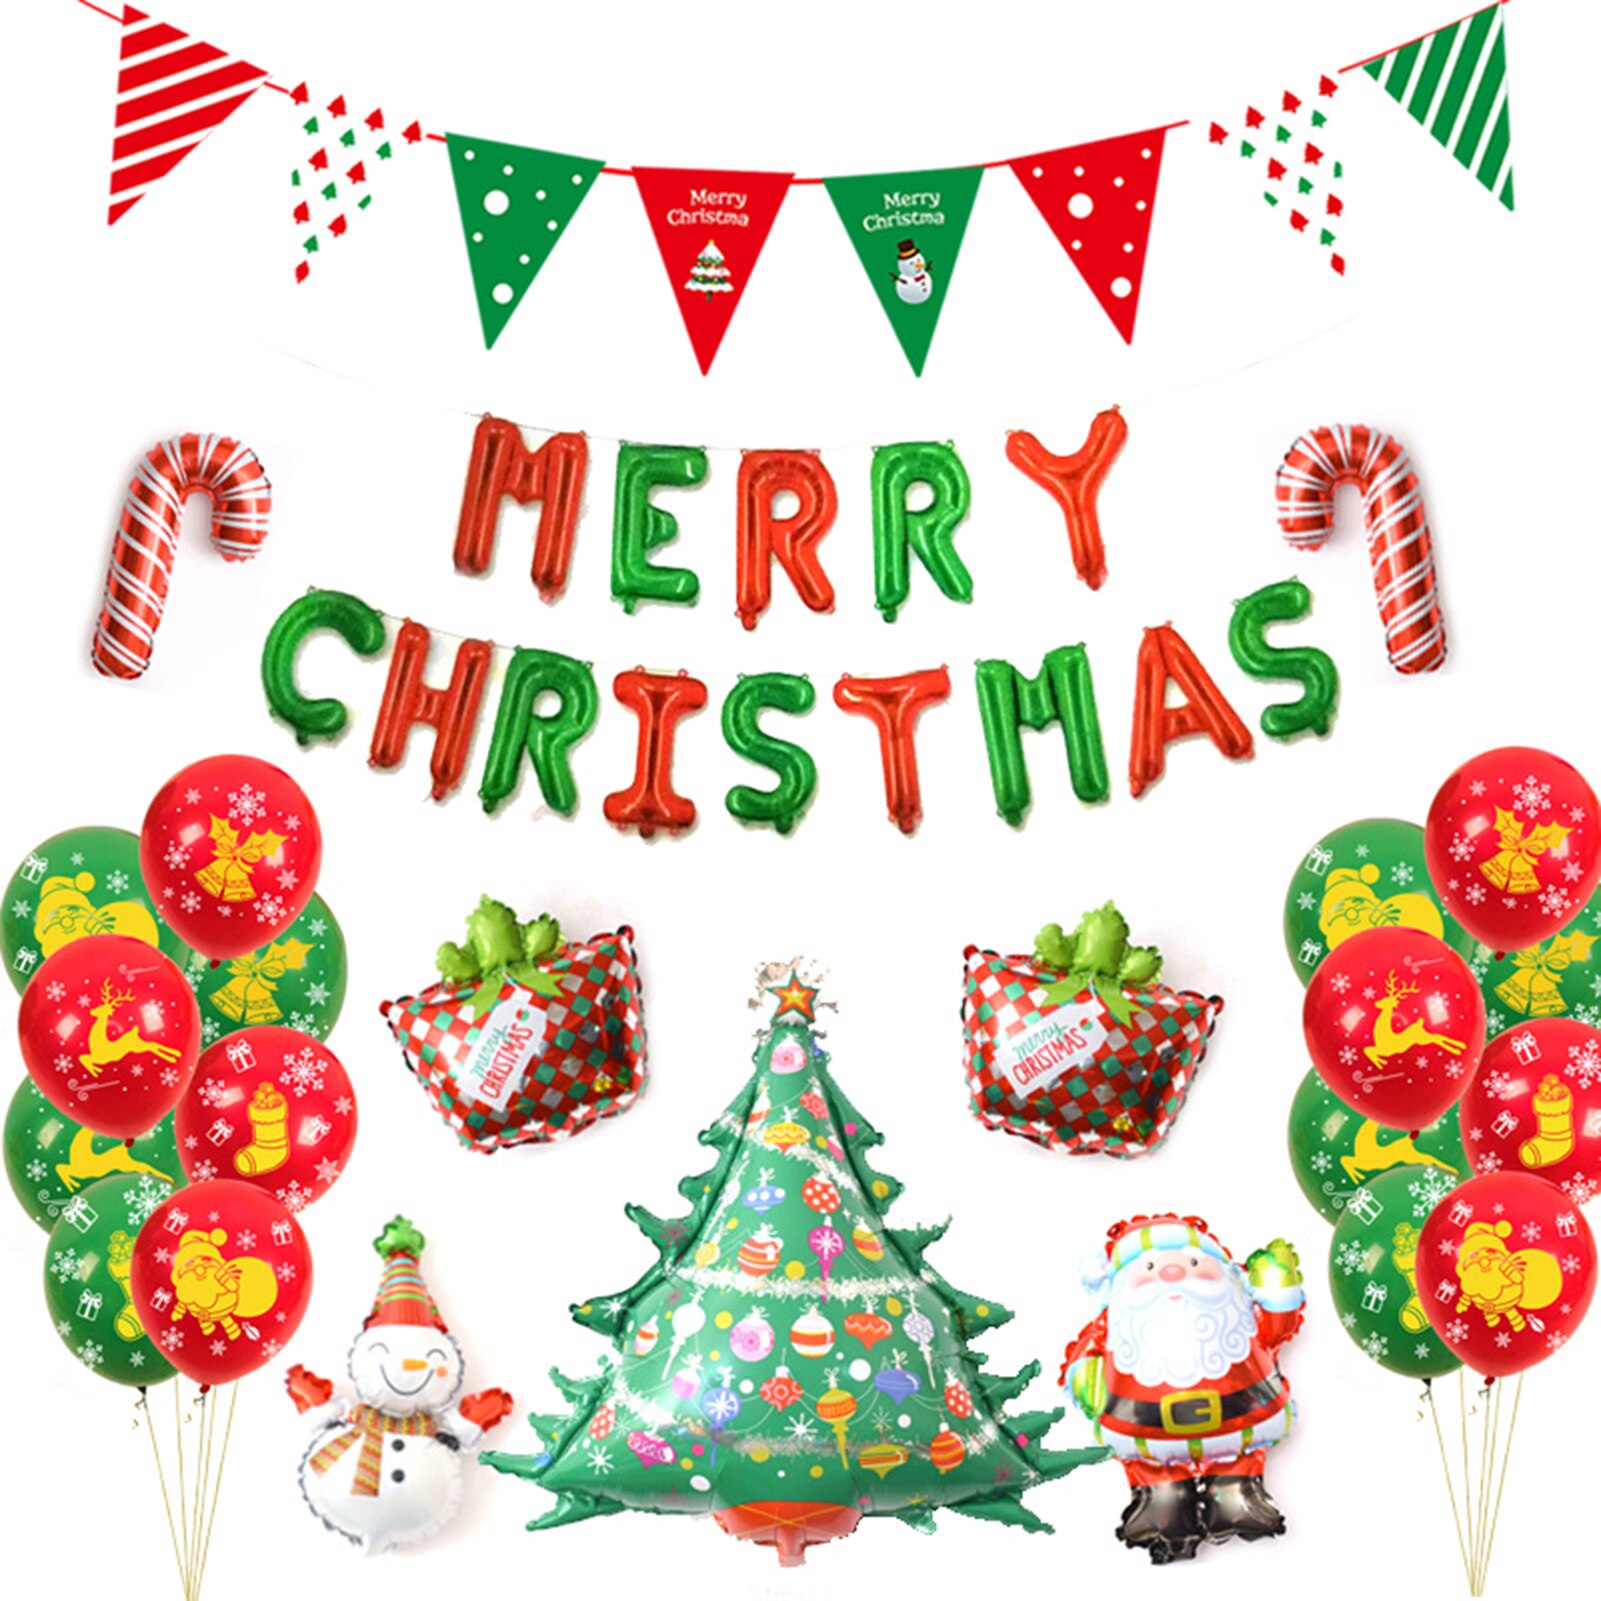 25 Stuks Kerst Ballon Banner/Vrolijk Kerstfeest Letters/Kerstman/Sneeuwman/Kerstboom Kids Party Decoratie kinderen